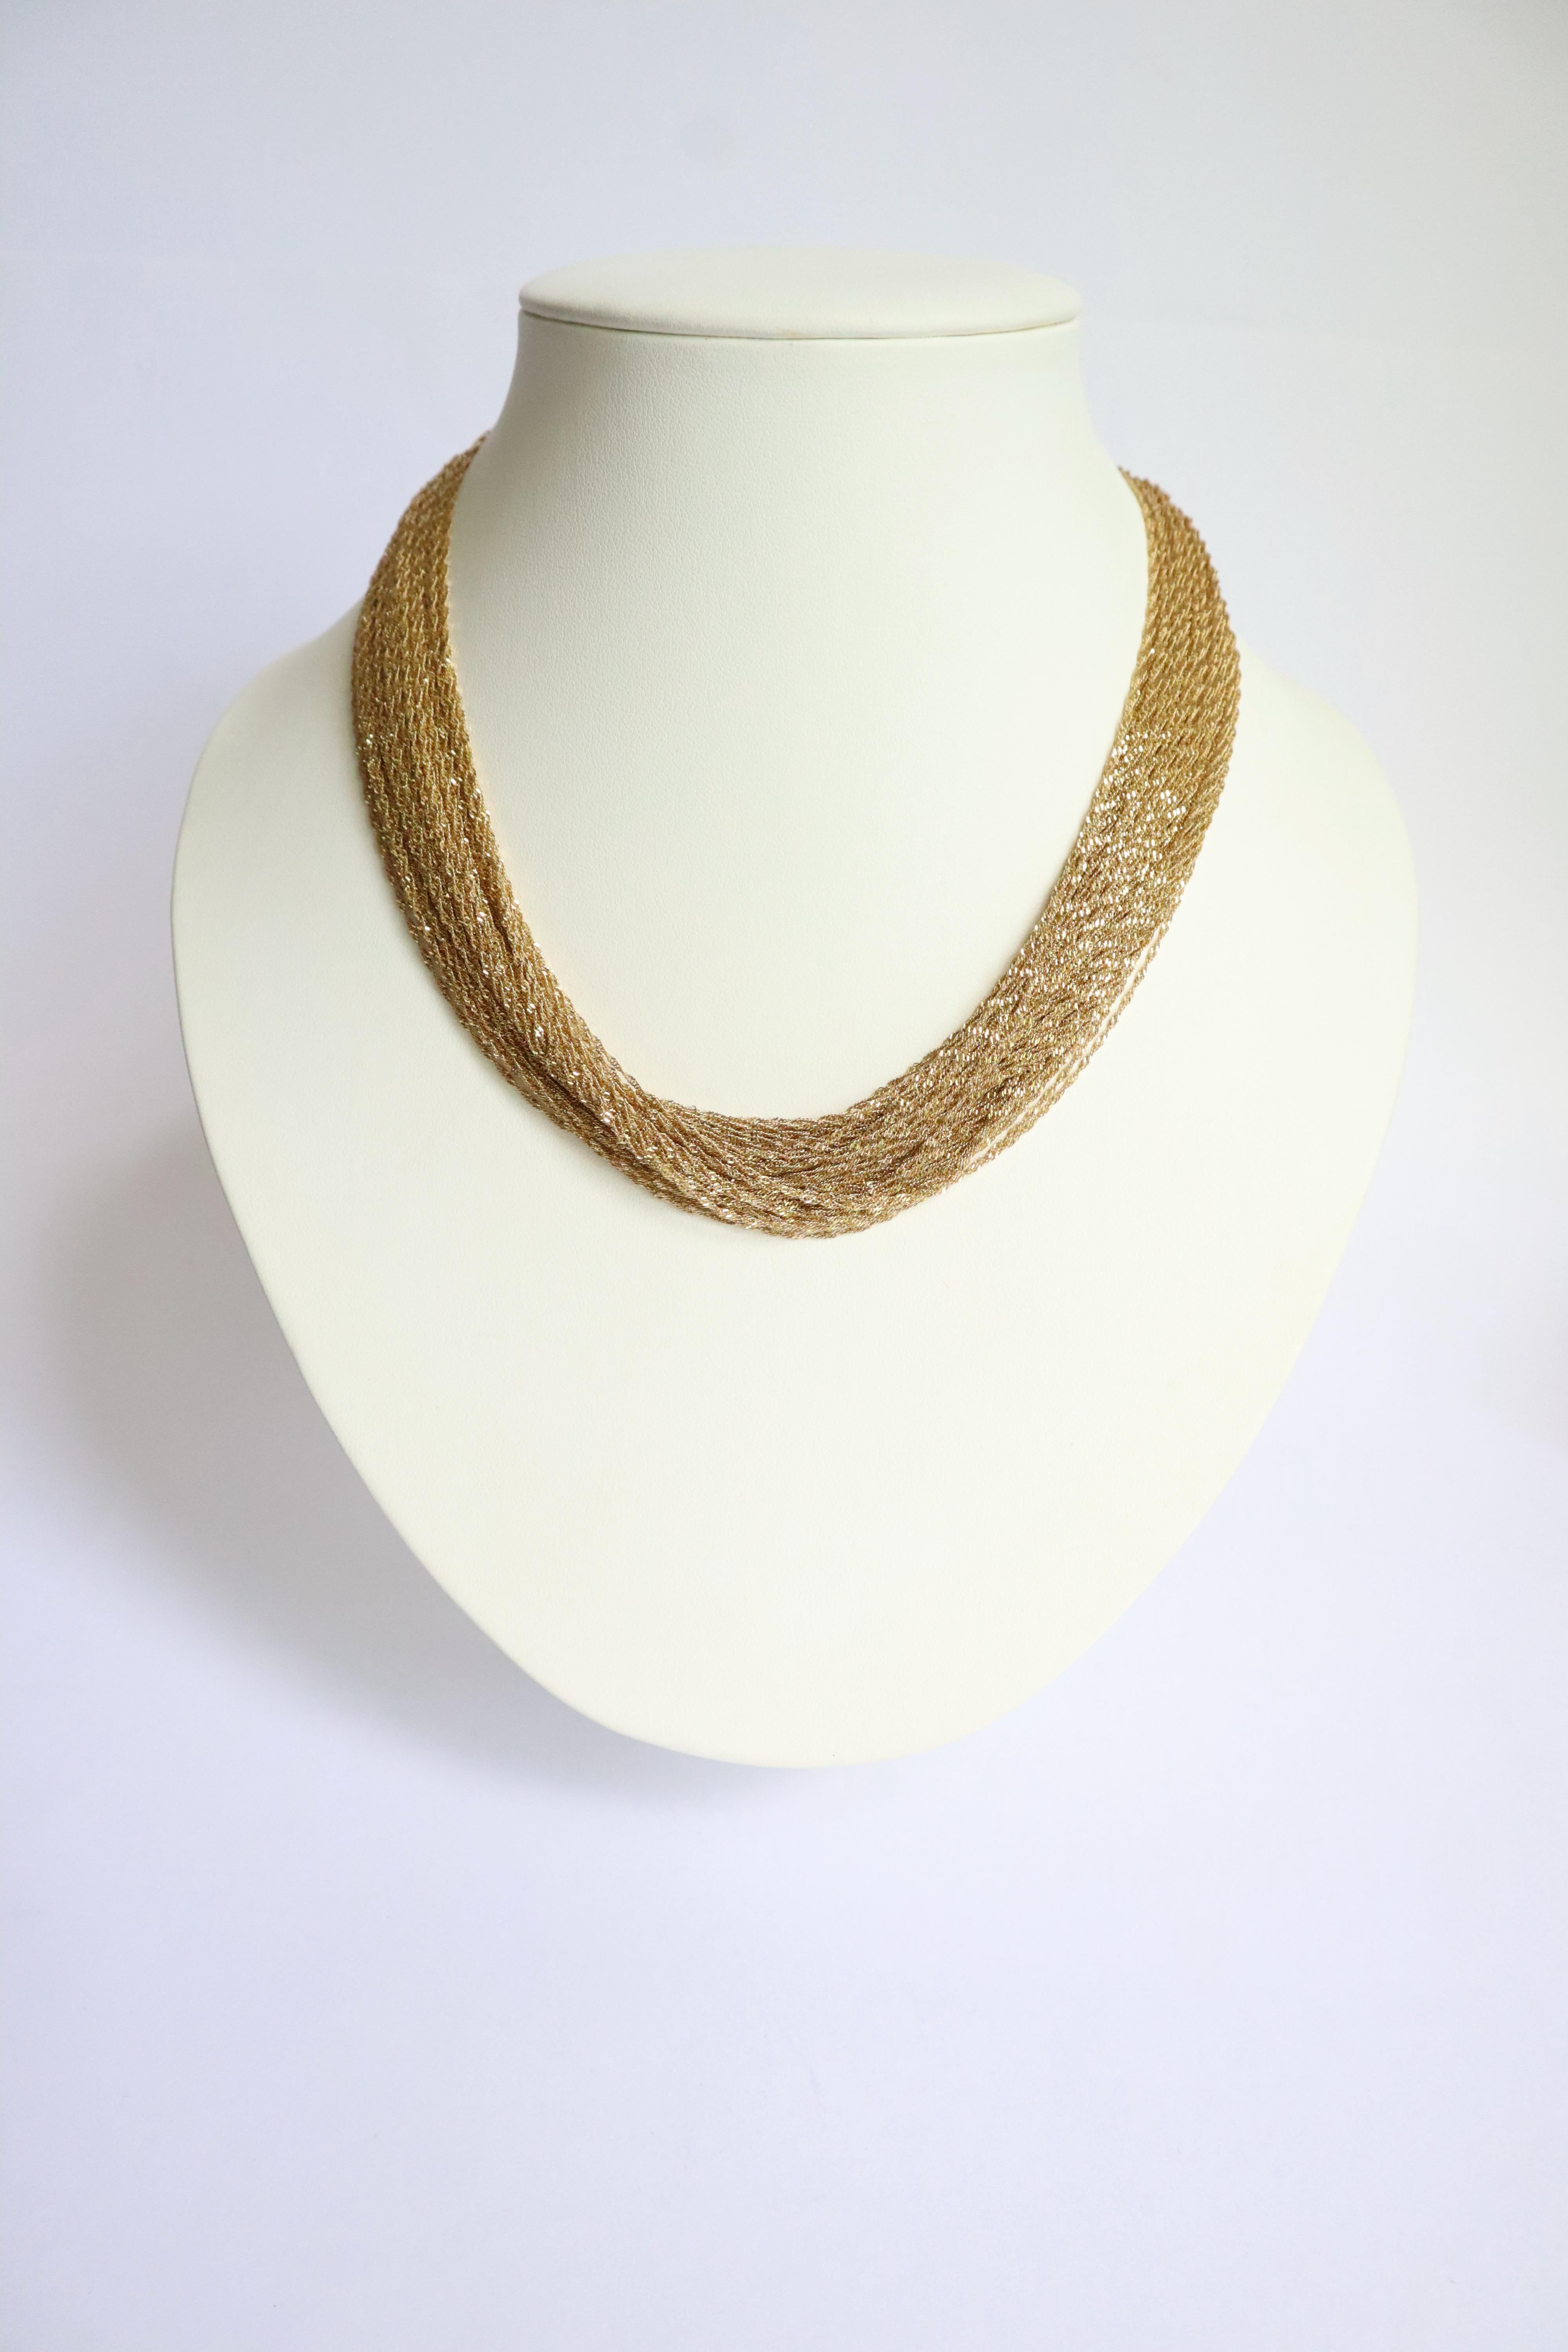 Mehrdrahtige Halskette aus 18 kt Gold. Es besteht aus 74 Ketten aus gedrehten Goldfäden. Dornschließe mit Sicherheits-Acht. 
Es ist möglich, es gelockt zu tragen, so dass es kürzer ist, oder nicht gelockt, so dass es länger ist. Bitte sehen Sie sich